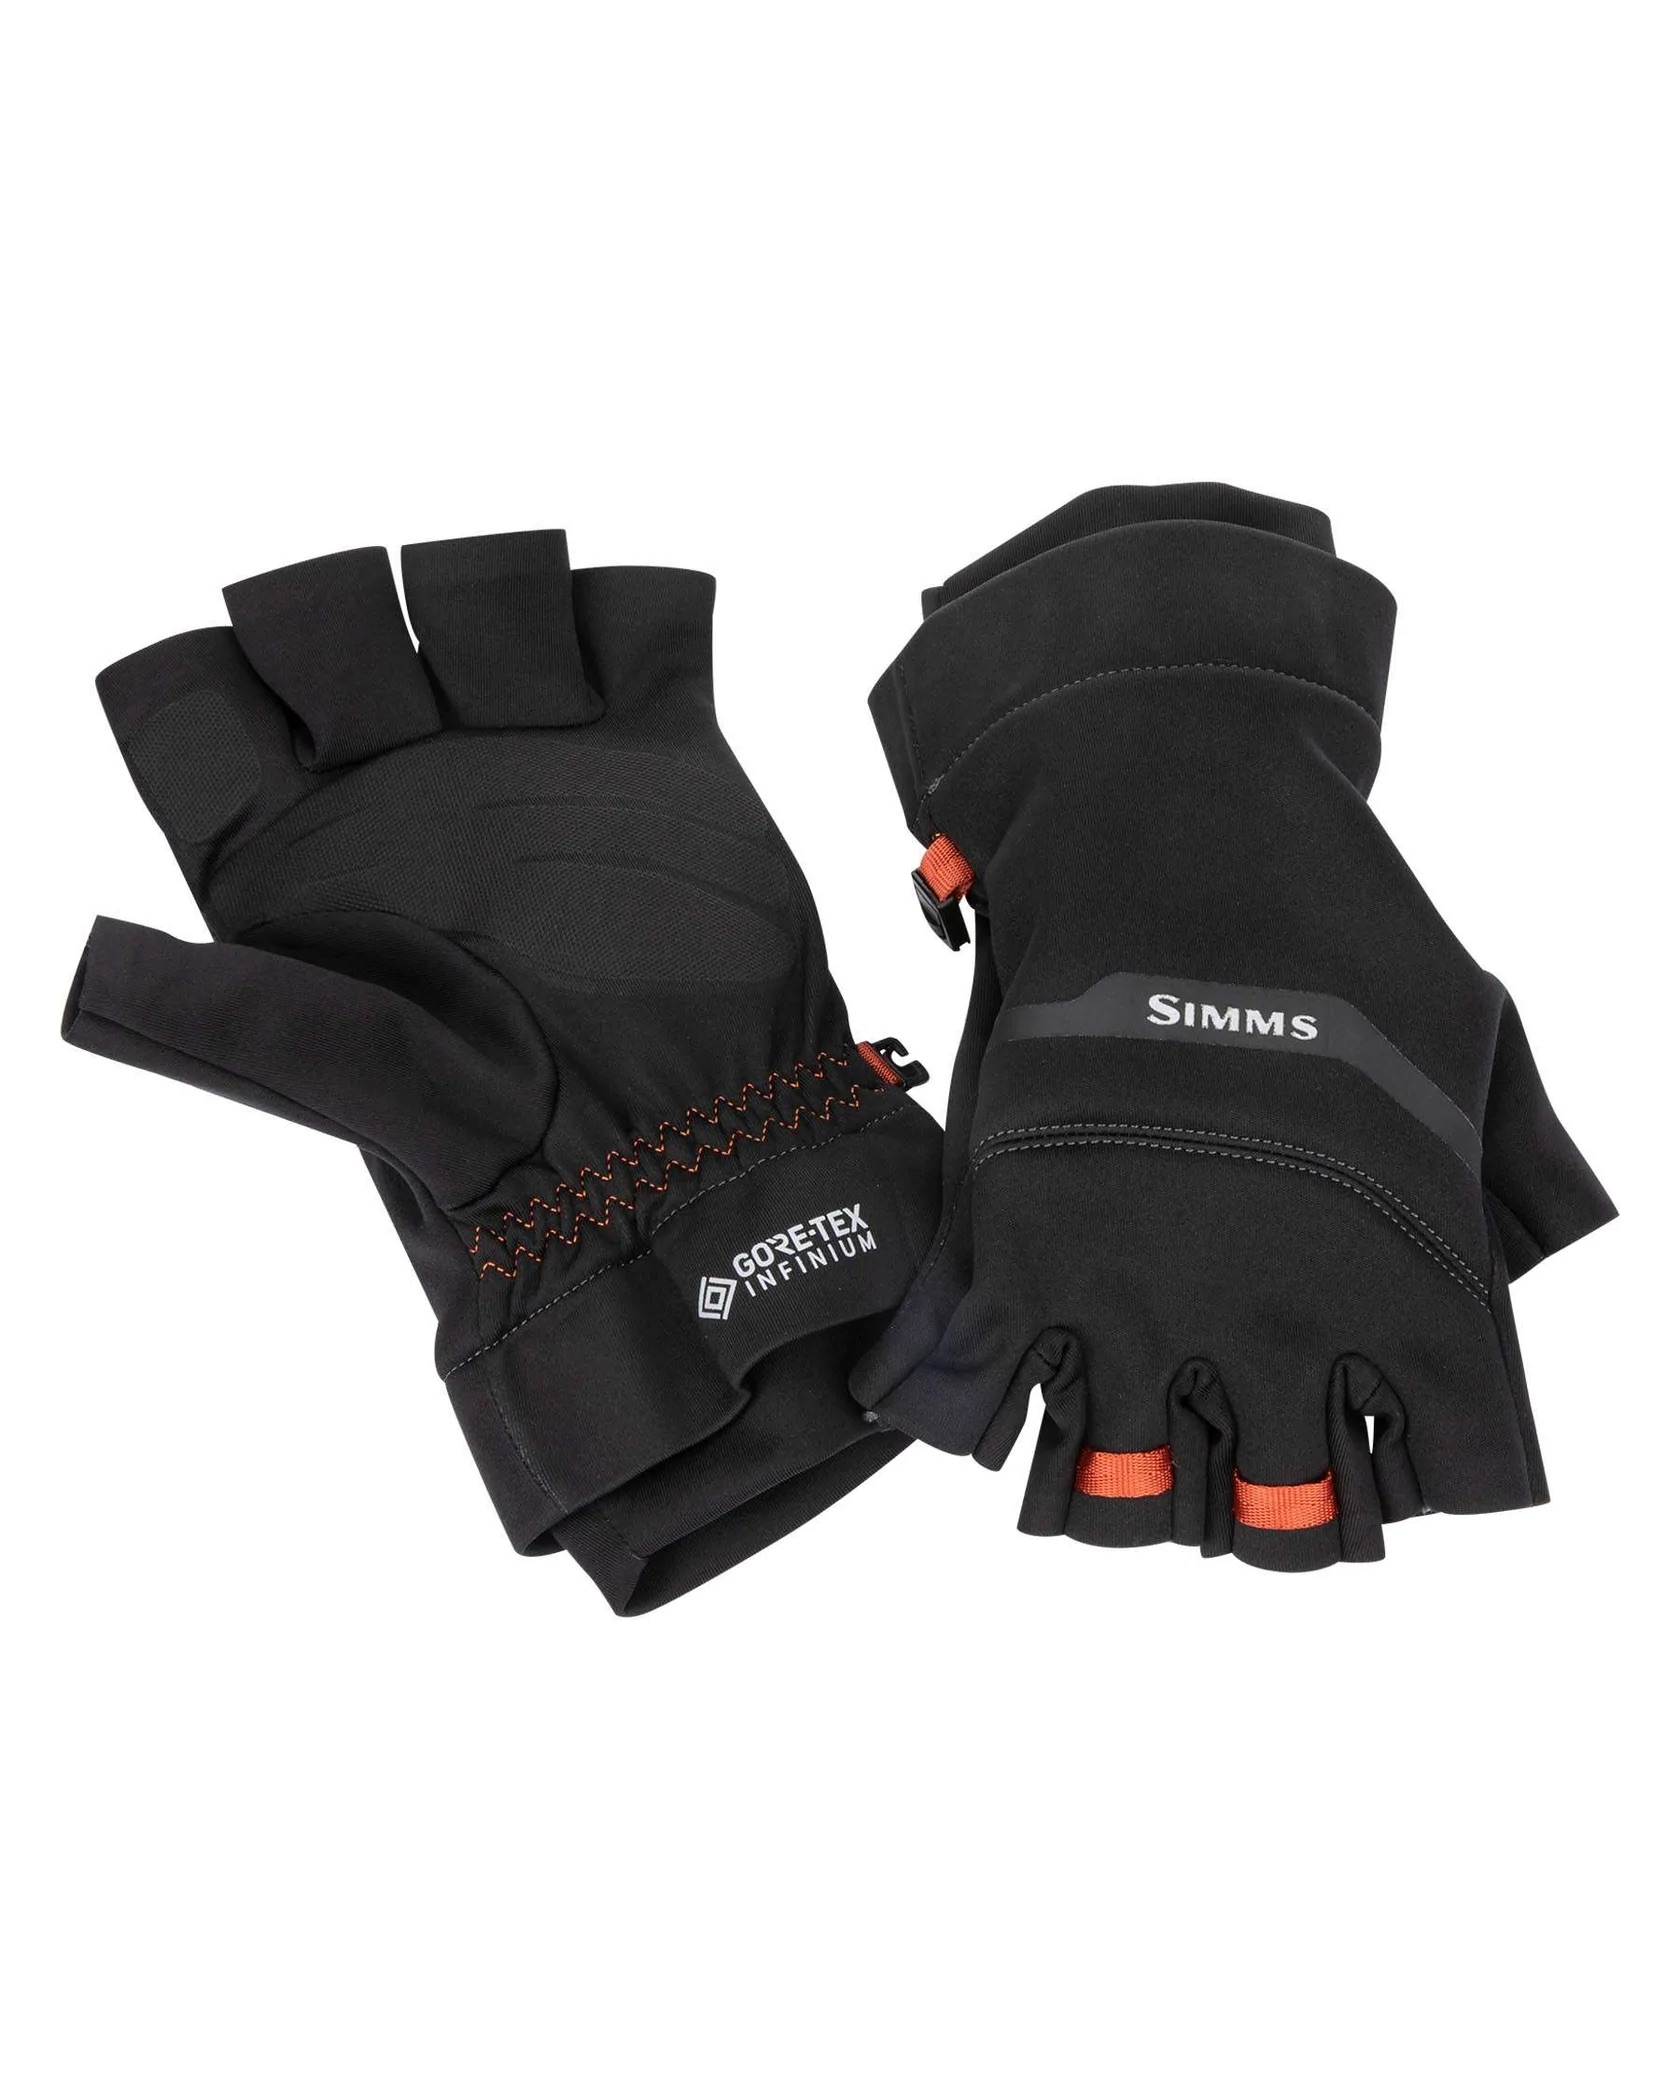 Simms GORE-TEX Infinium Half-Finger Glove - Black - Medium